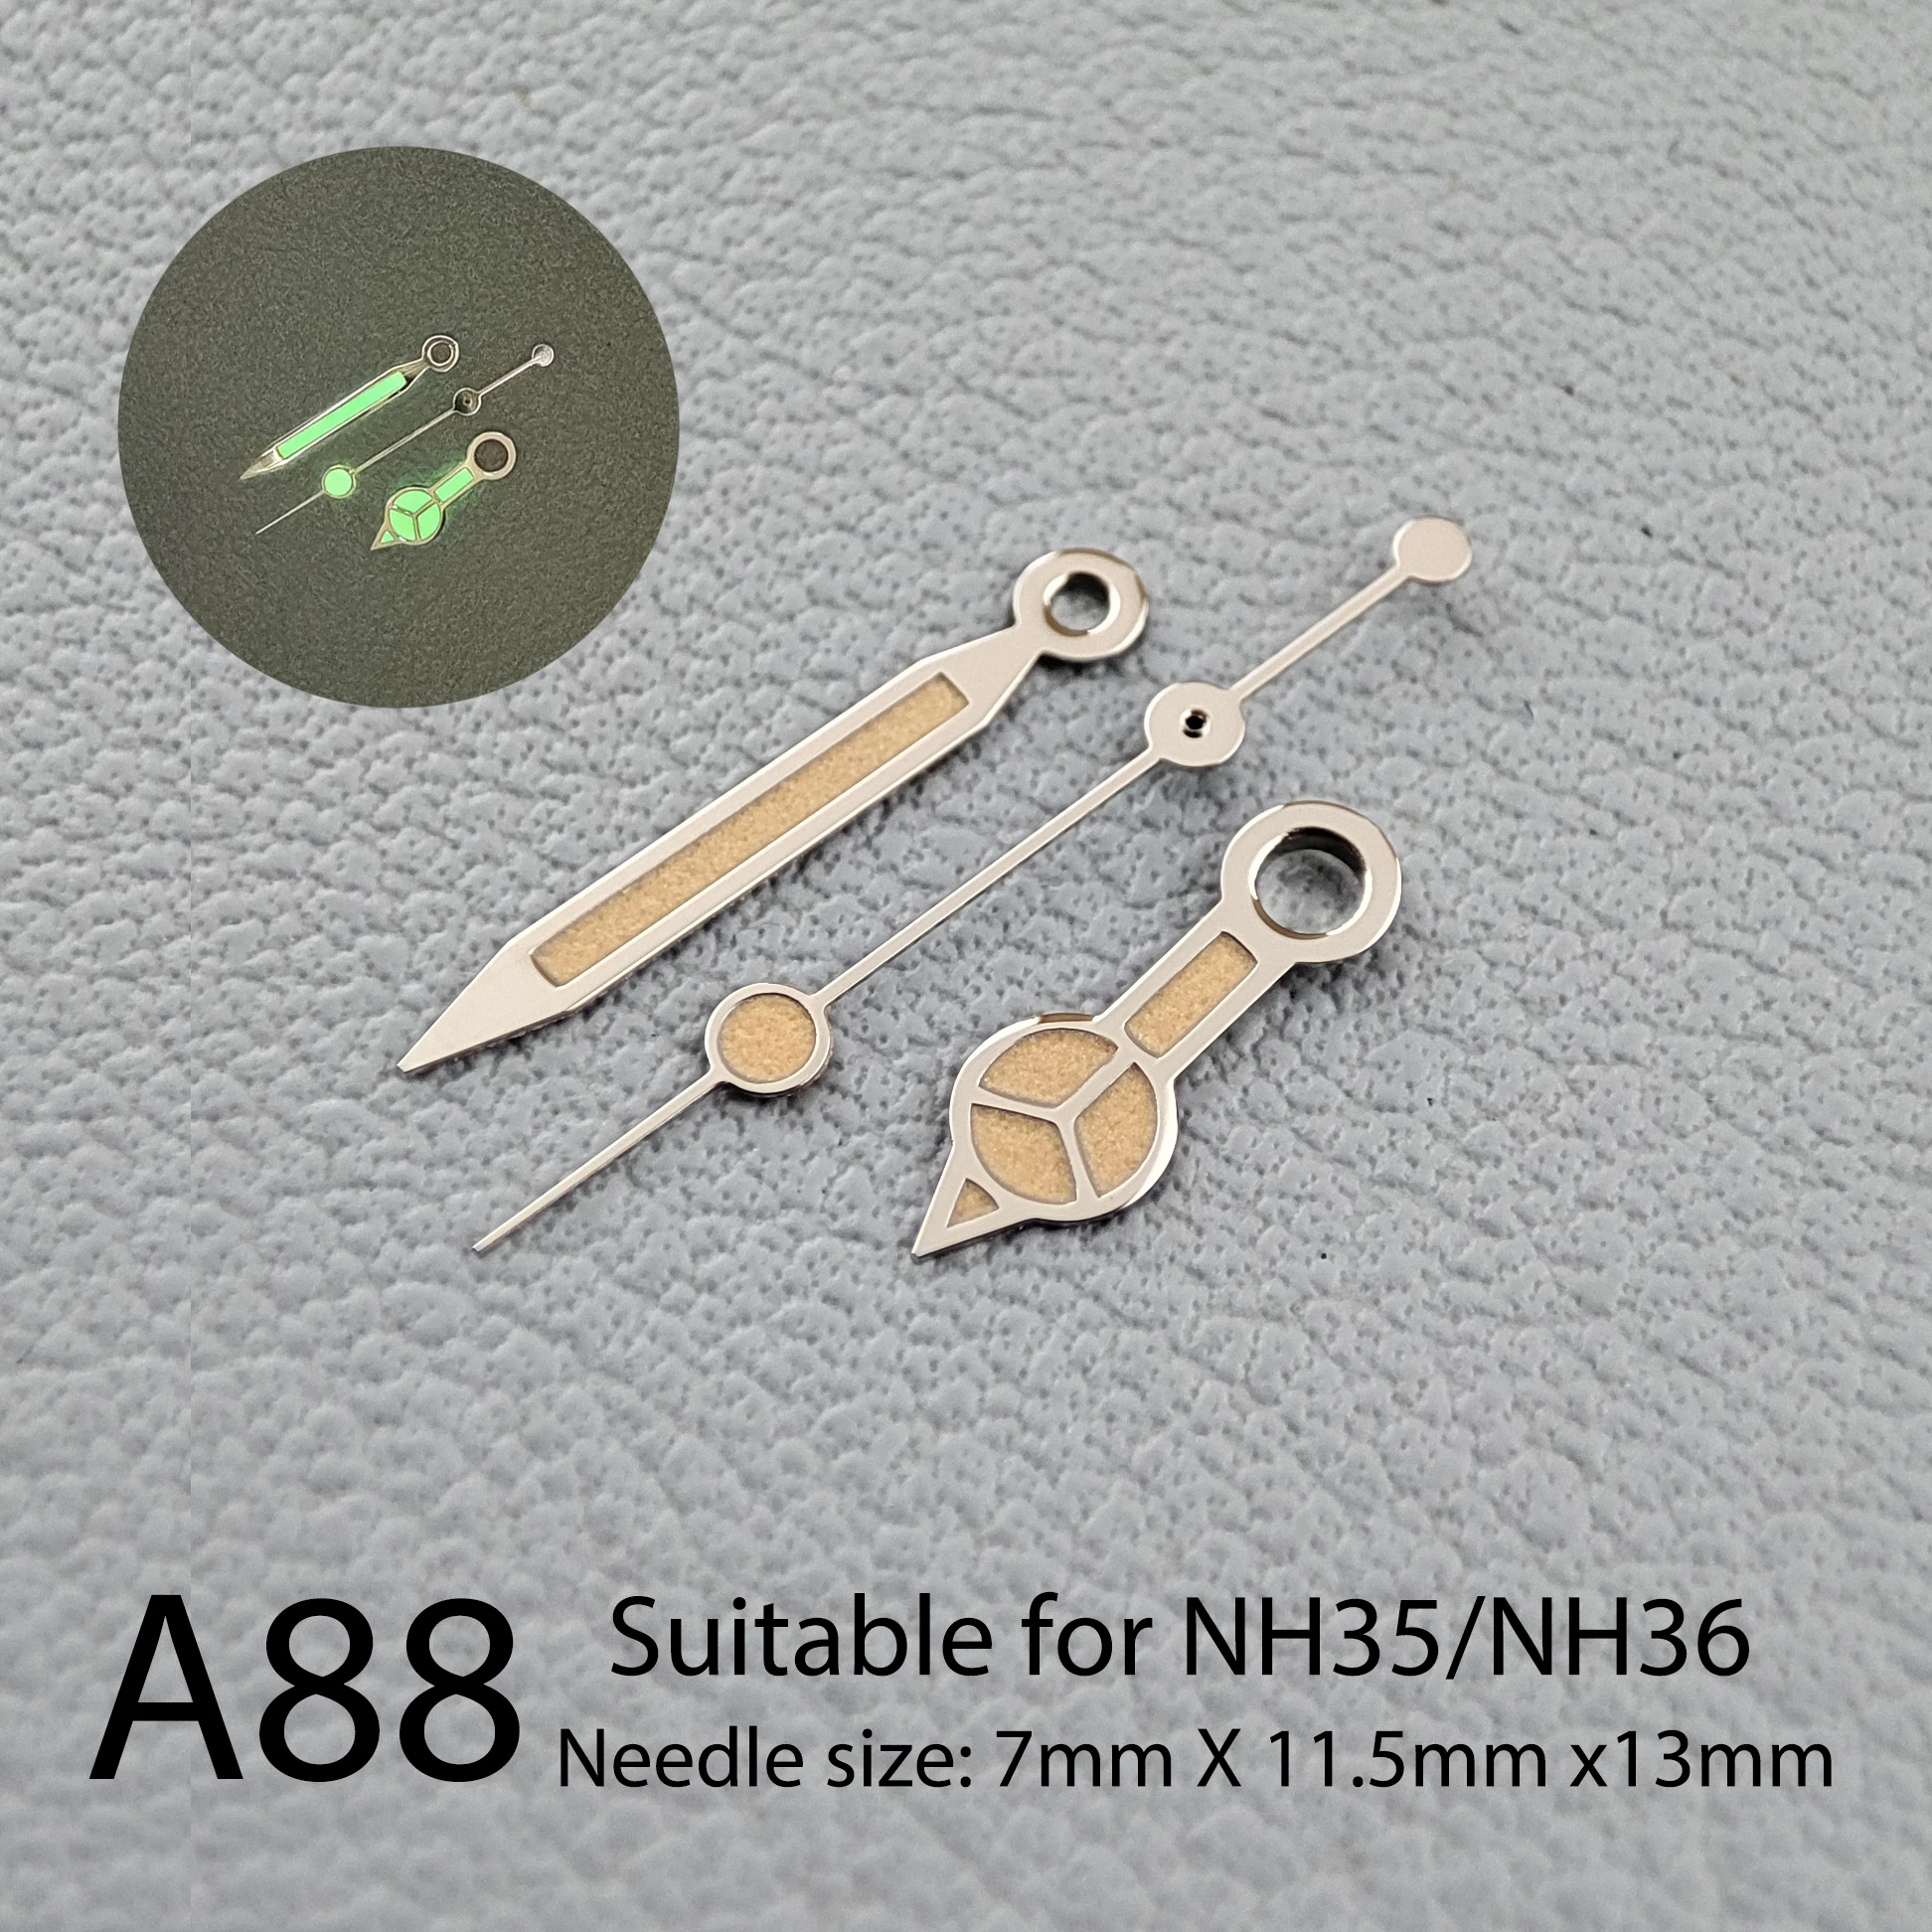 

Аксессуары для часов, указка для часов NH35, сильный зеленый светящийся указатель для рук, подходит для NH35, NH36 механизм A88